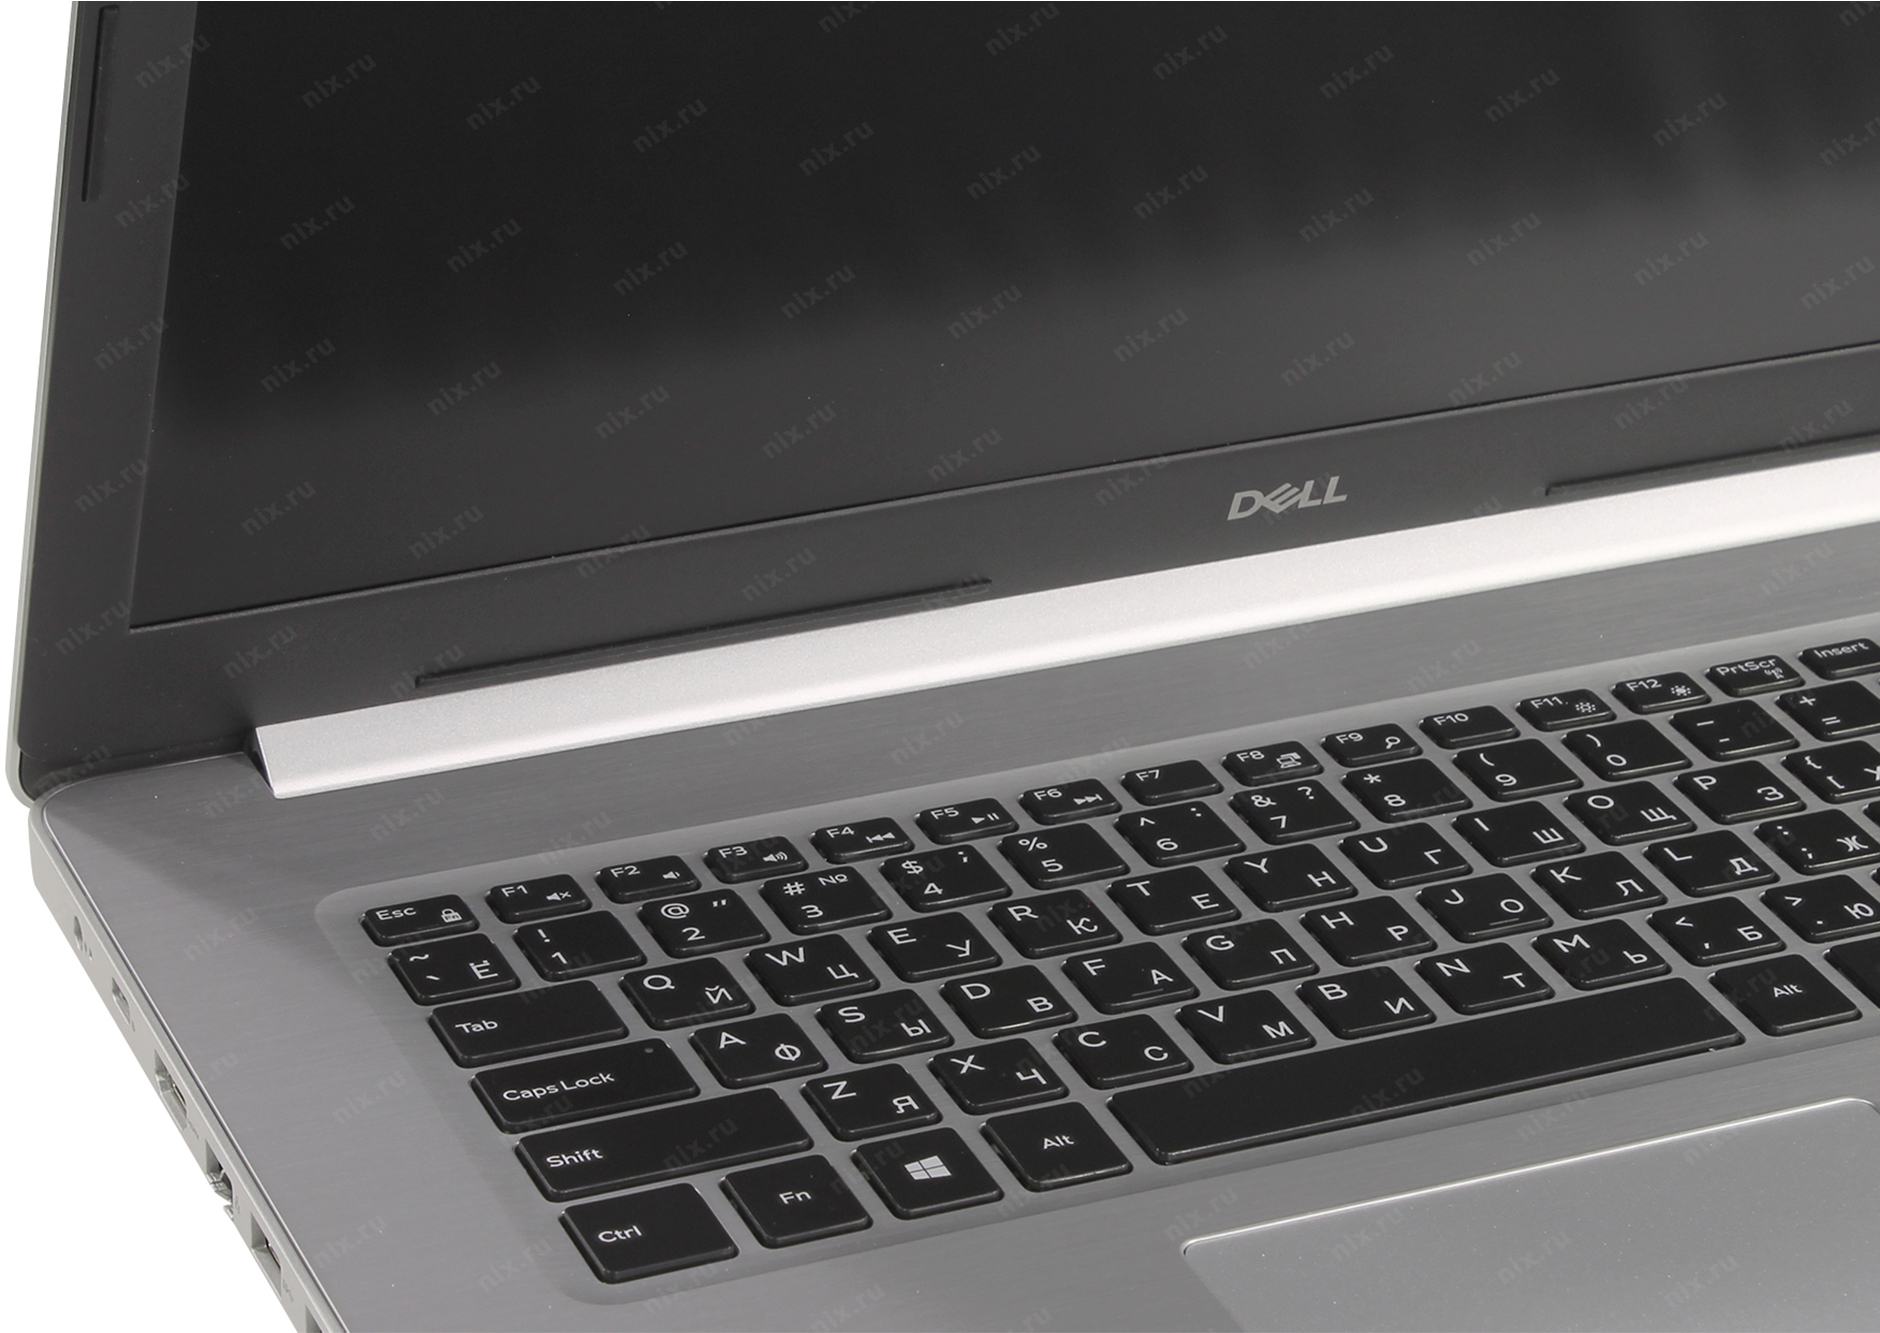 Ноутбук Dell Inspiron 5770 Купить